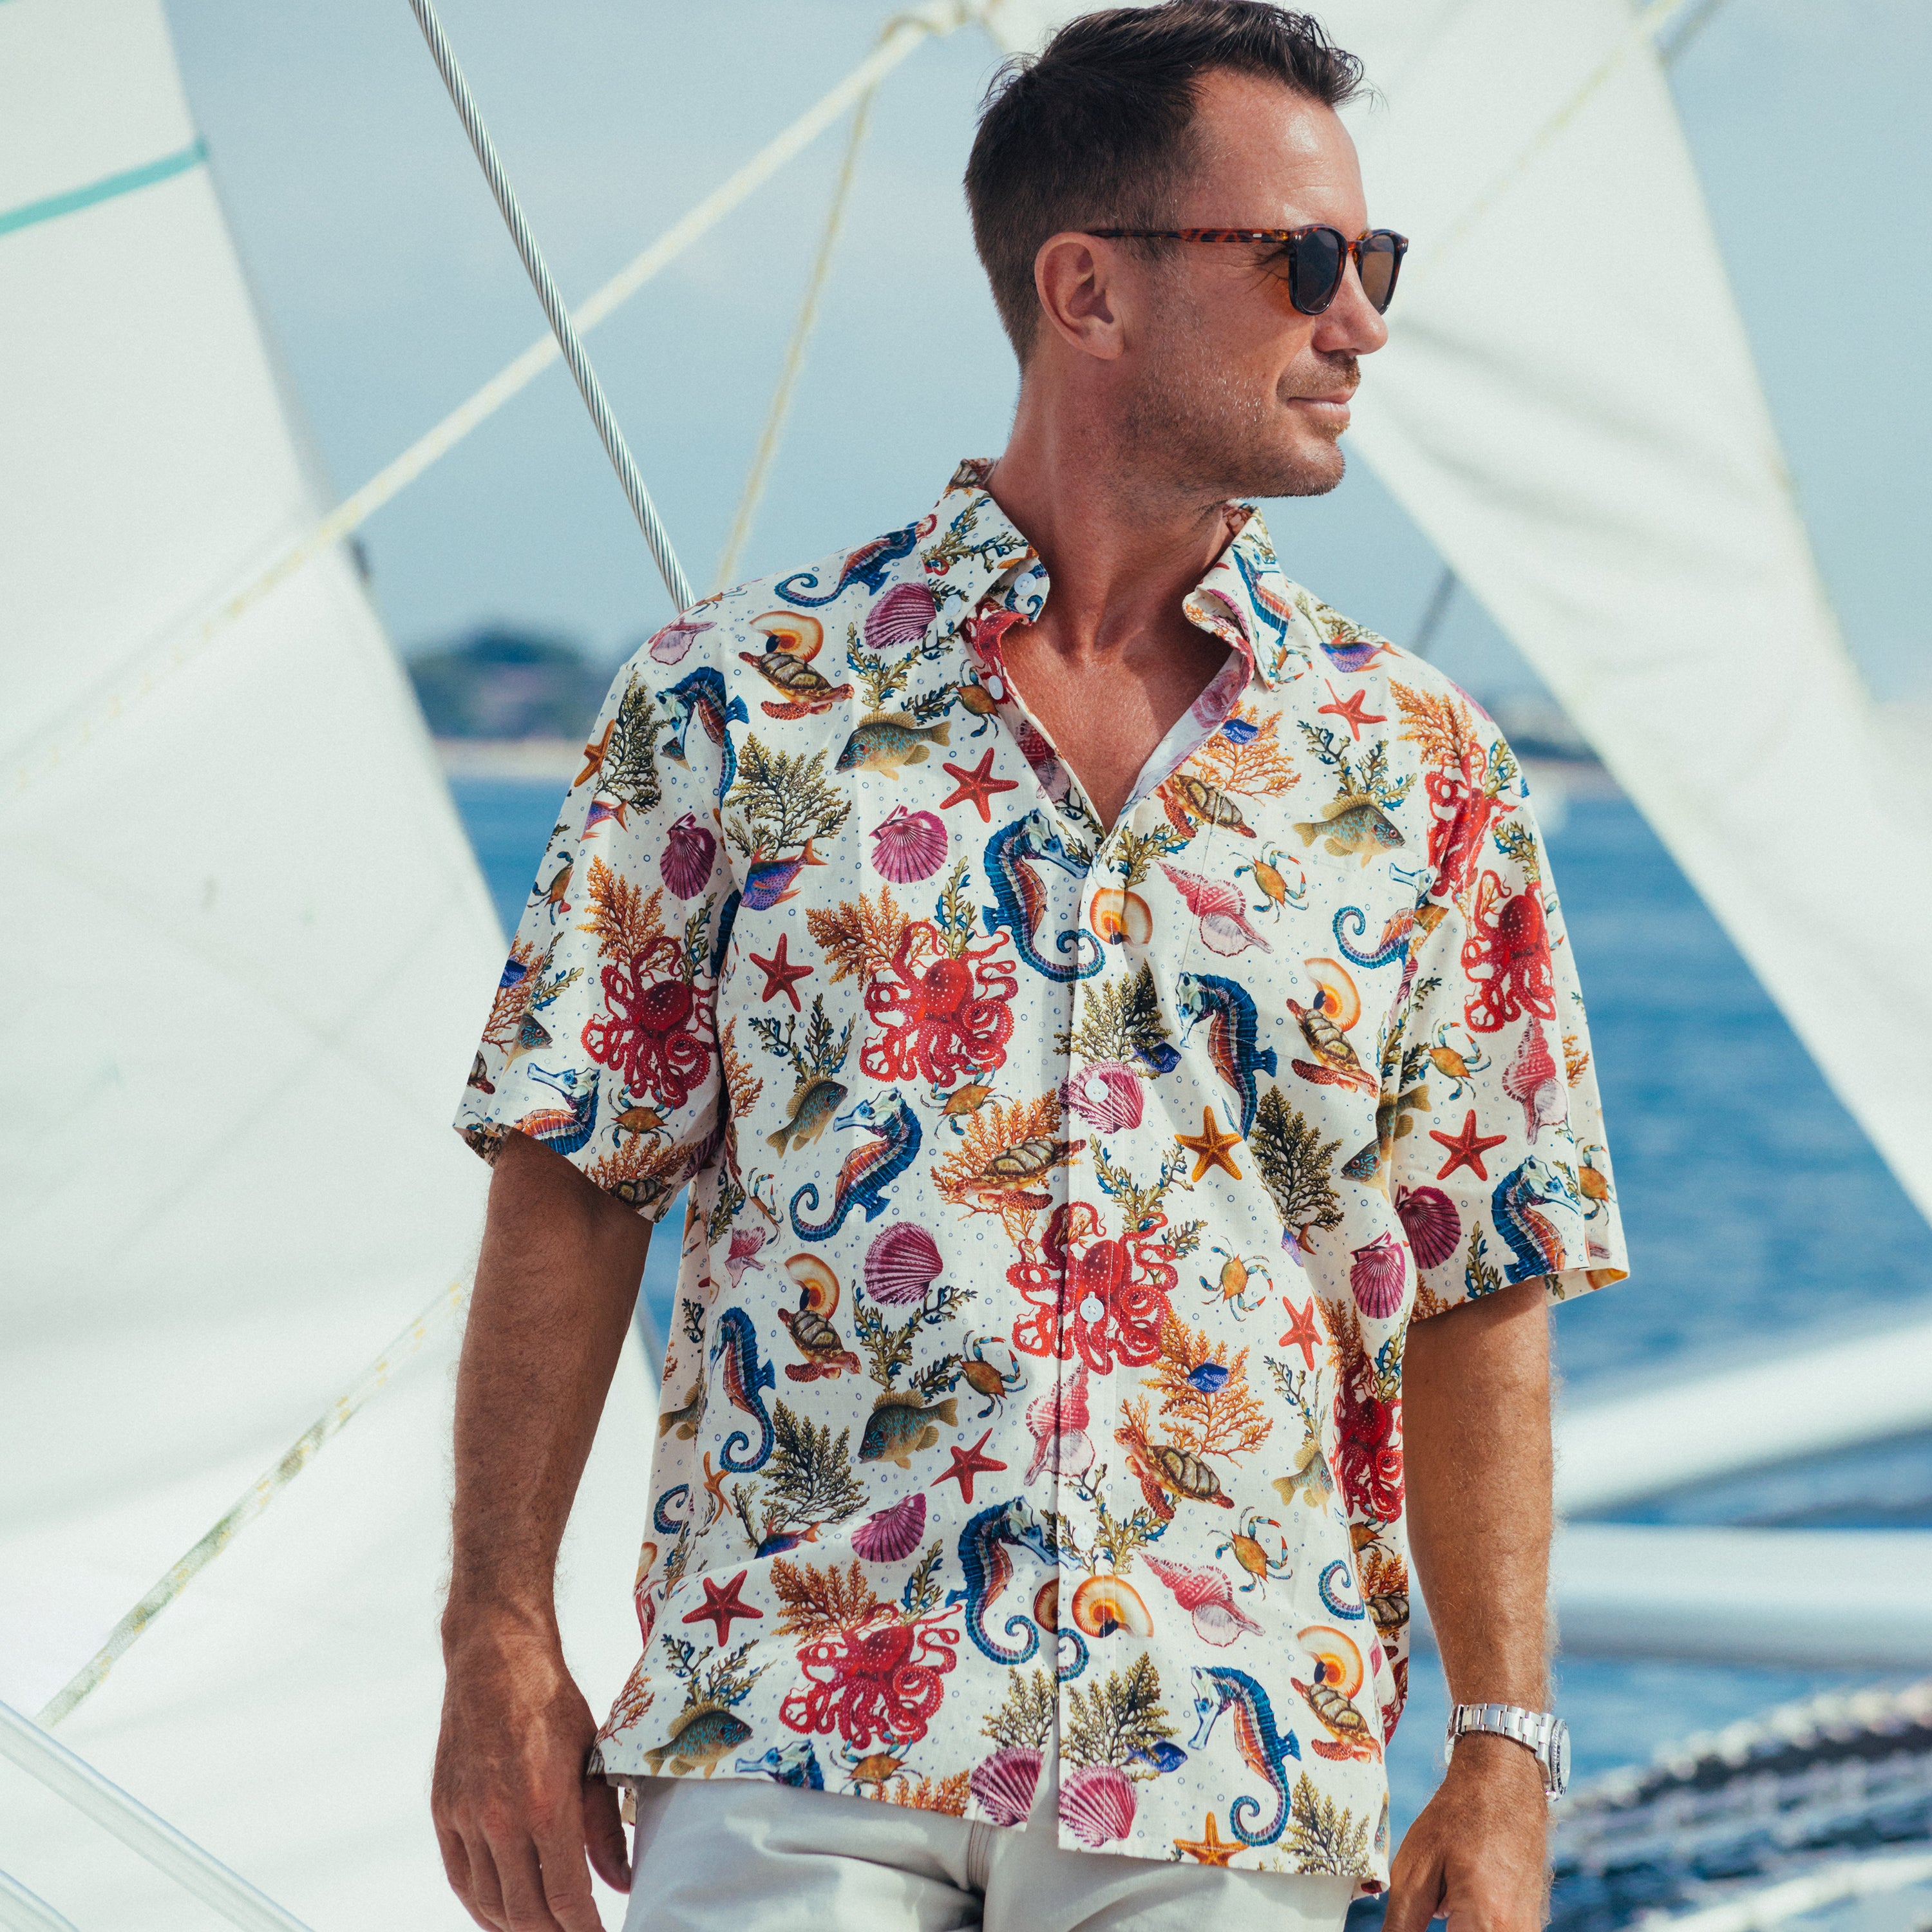 Nautica Men's Large Sailboat Hawaiian Button-Down Shirt